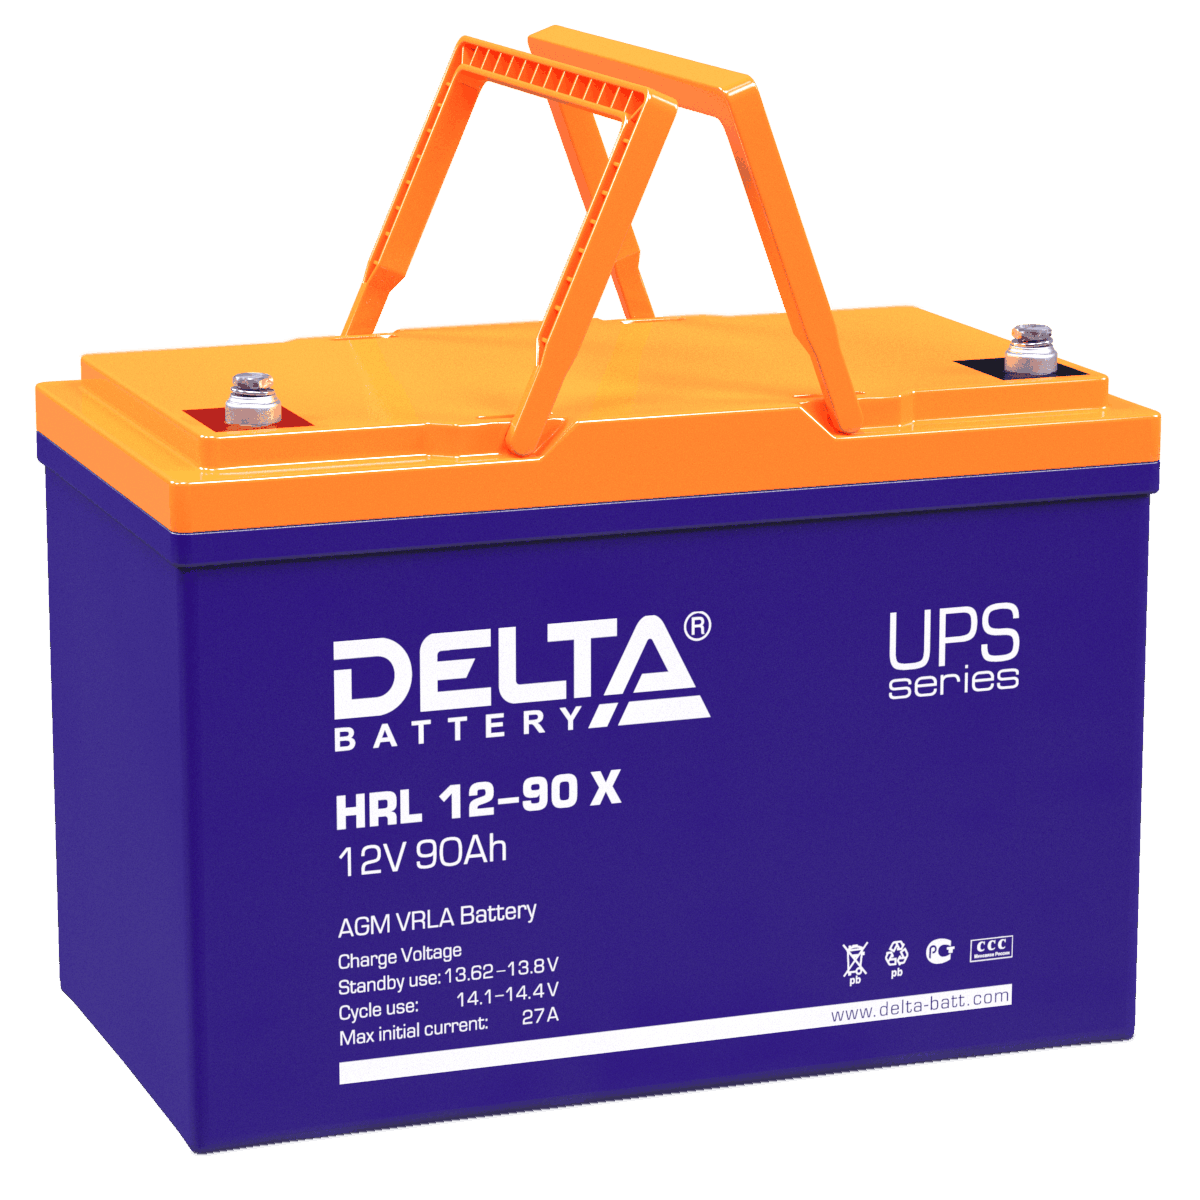 Все Батареи DELTA HRL 12-90 X видеонаблюдения в магазине Vidos Group